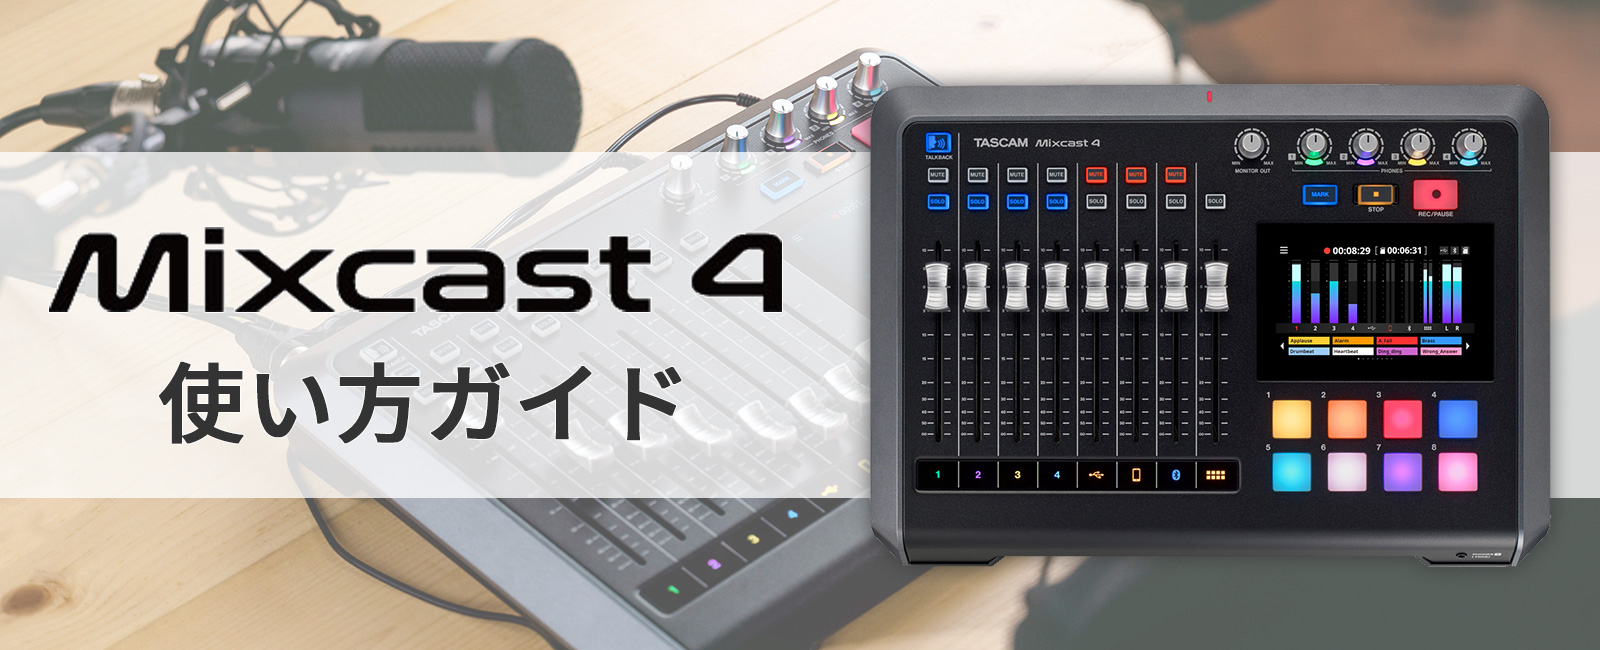 Mixcast 4 使い方ガイド